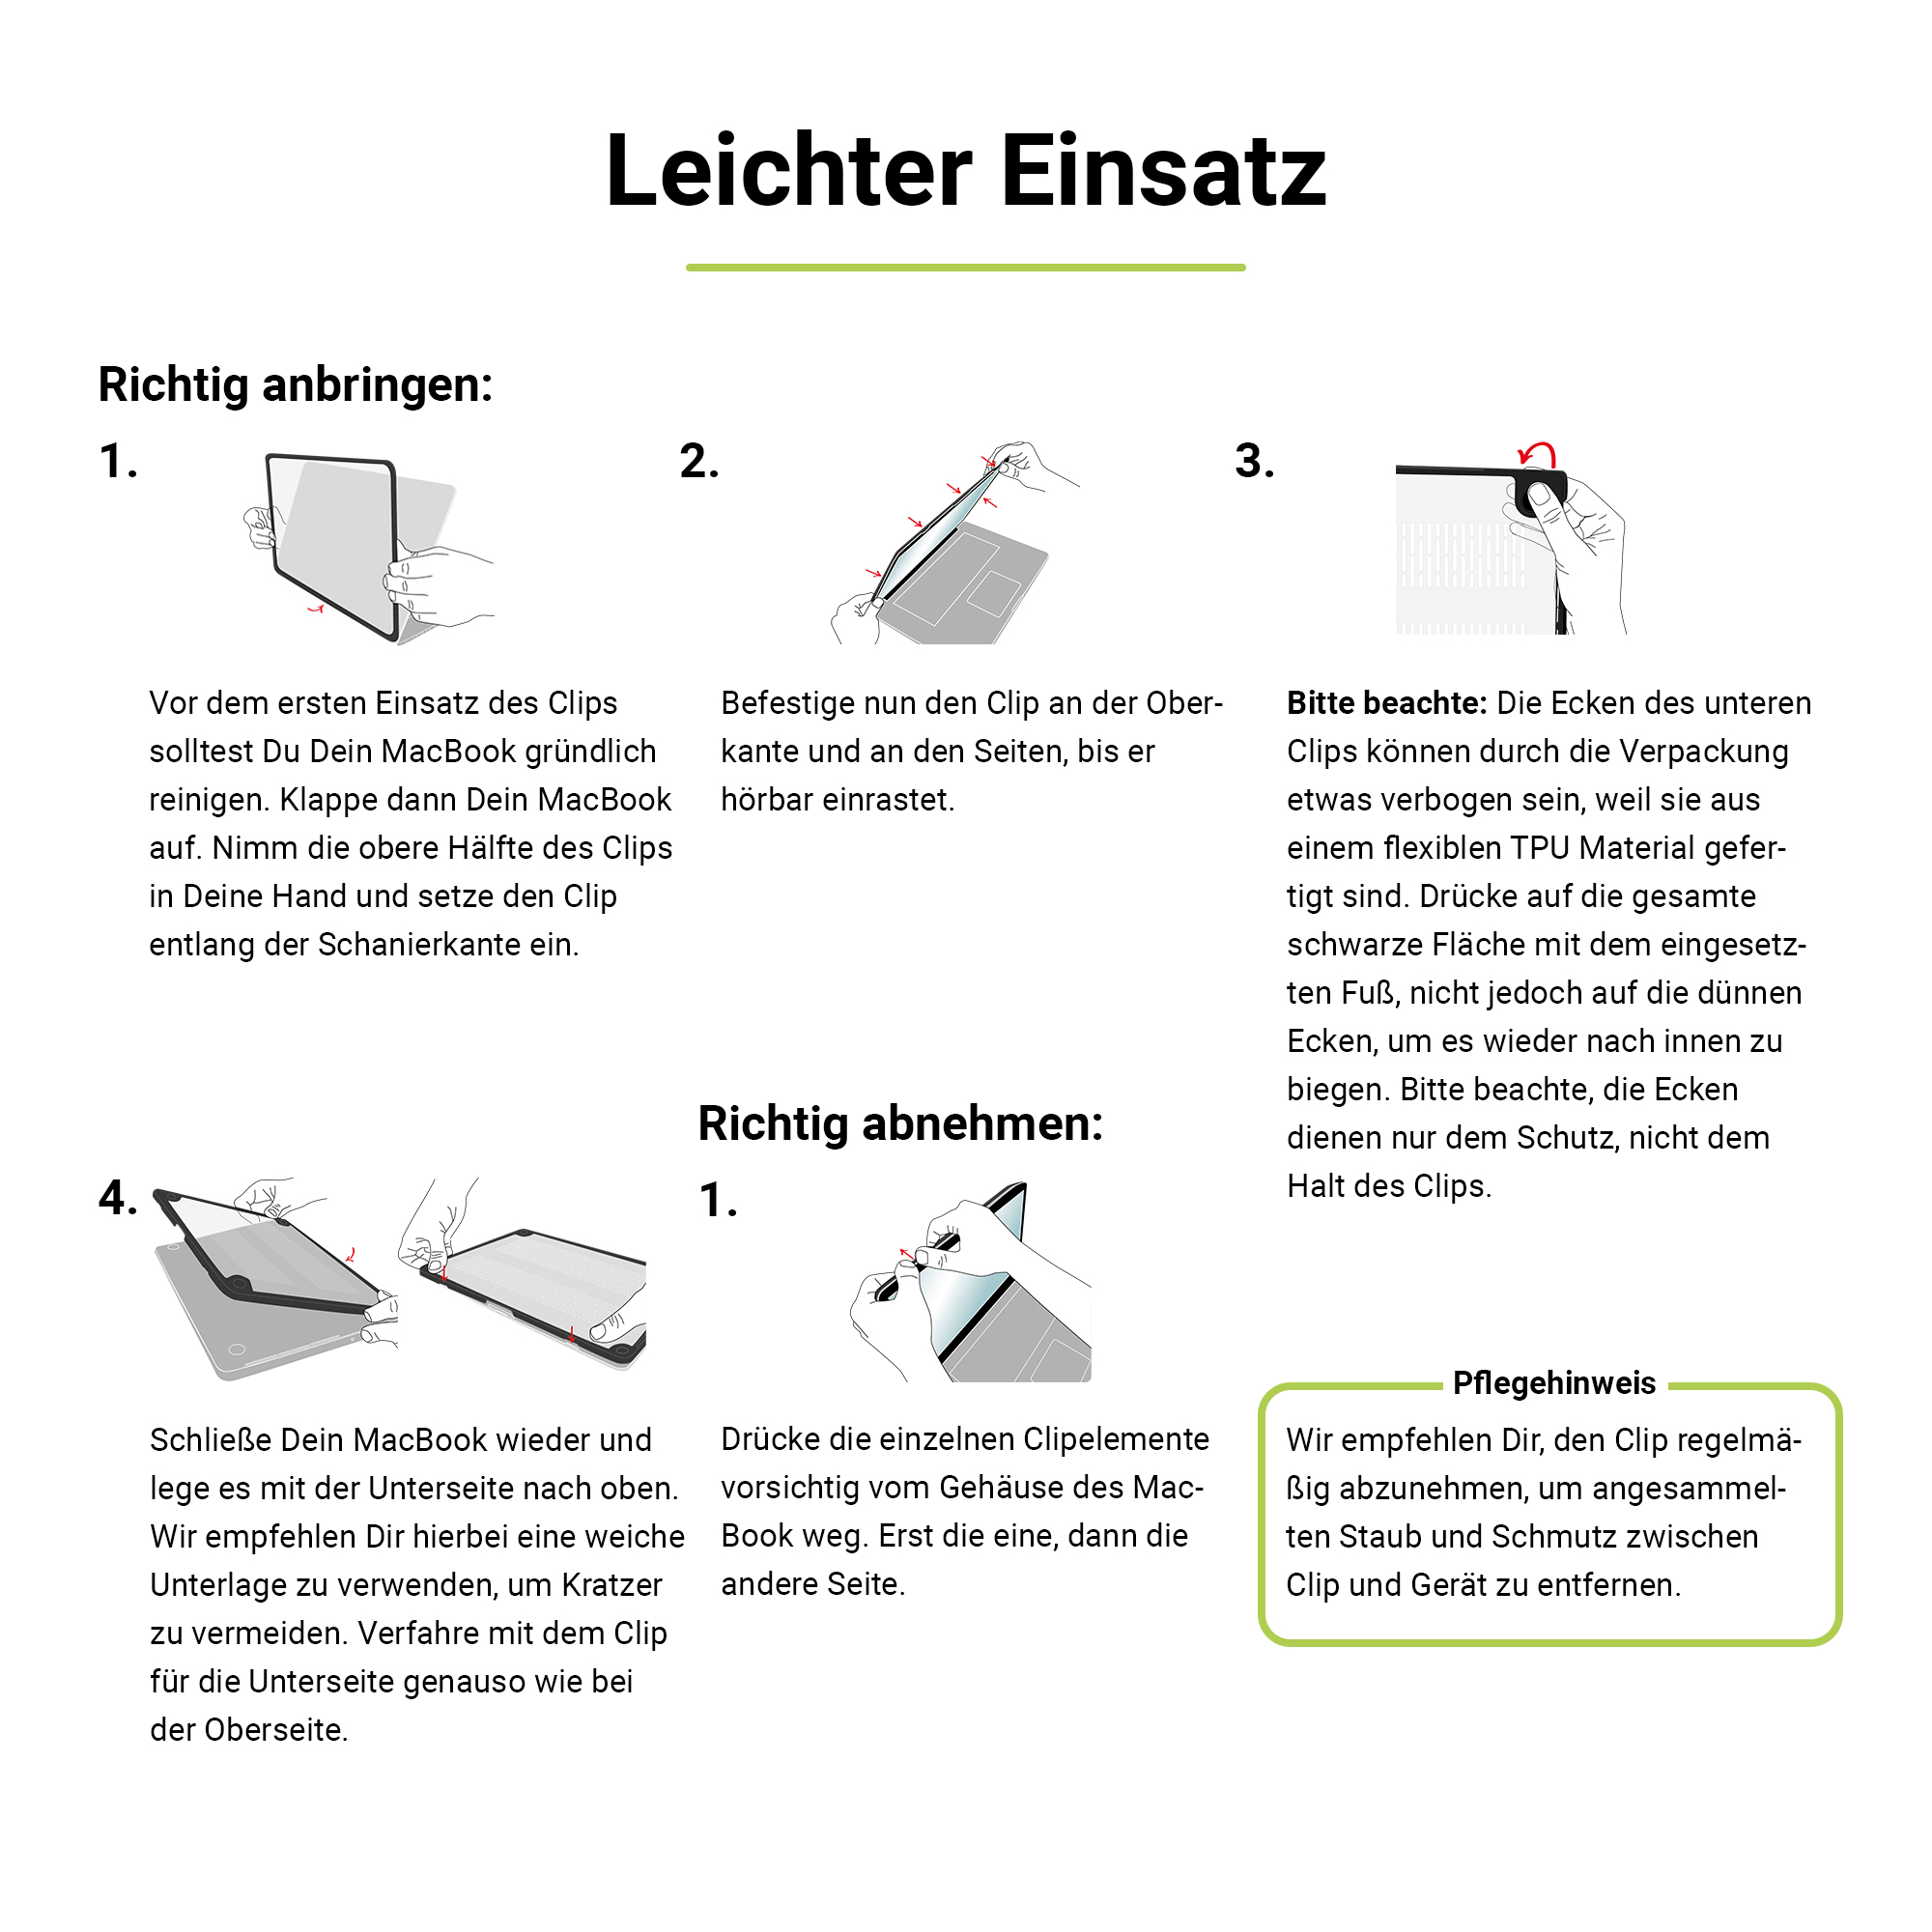 ARTWIZZ IcedClip MacBook (M1/M2/M3) für Pro Bumper Hülle Apple Kunststoff, Zoll Notebook 16 Schwarz Transluzent 